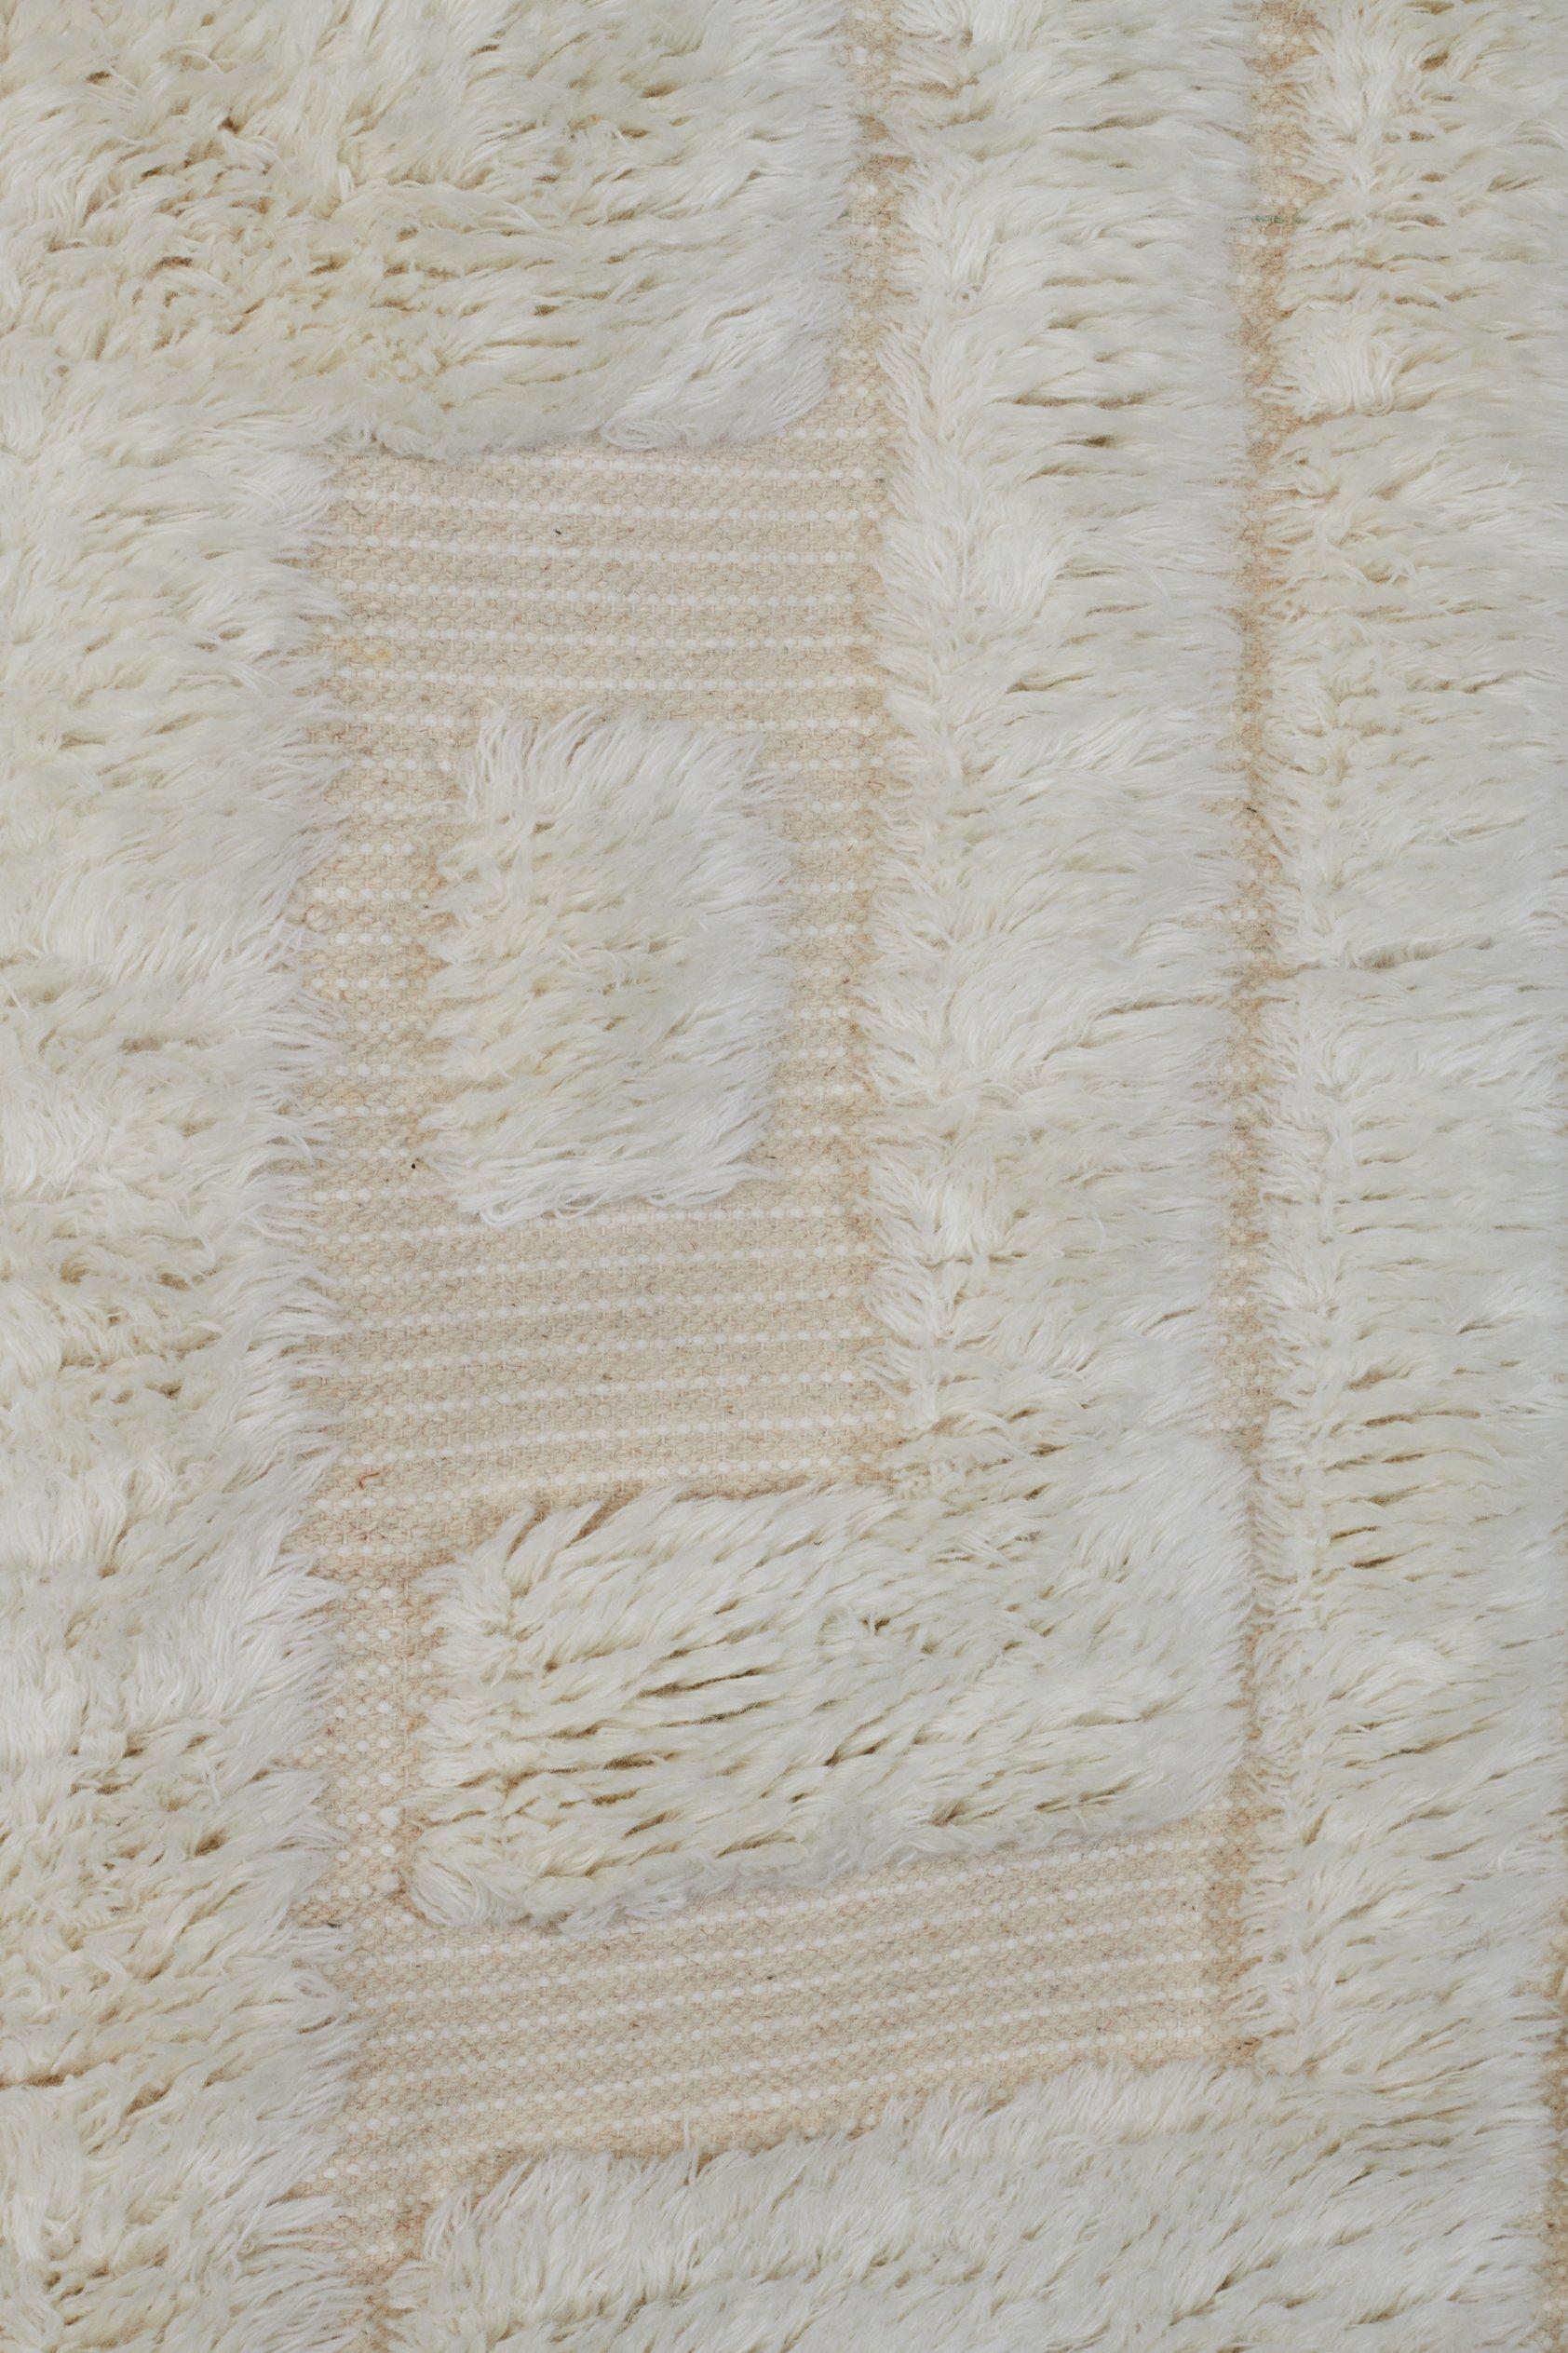 Le tapis DD Shaggy Labyrinth est tissé à la main et composé de 100% de laine. Il présente un motif unique car certaines parties du tapis sont tissées à plat et d'autres en poils hirsutes, ce qui lui donne un aspect unique grâce à son effet de